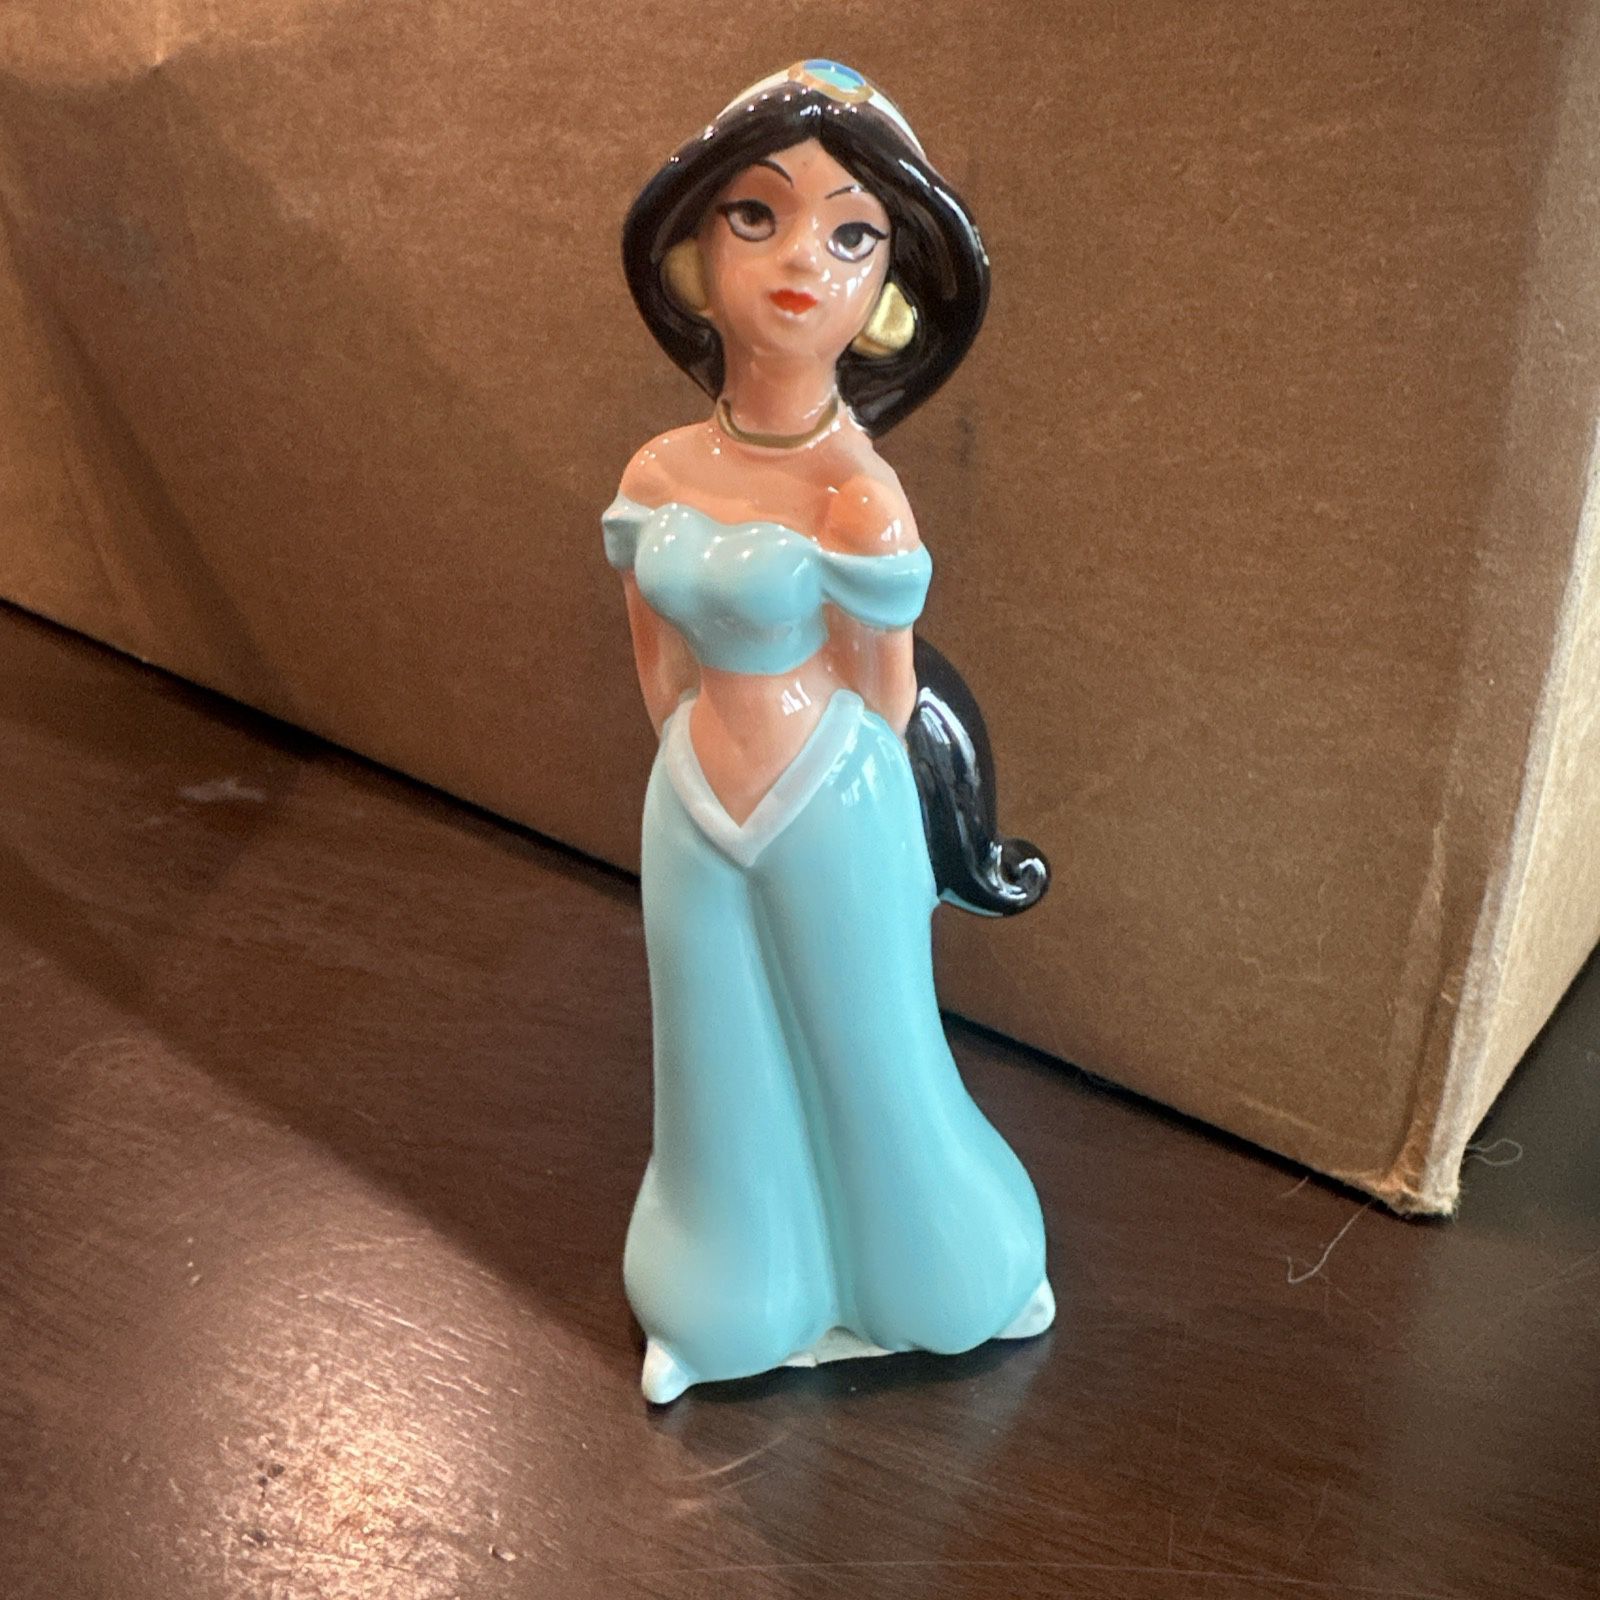 Disney's Aladdin - Jasmine - Figurine Ceramic Porcelain - 5.75" Tall